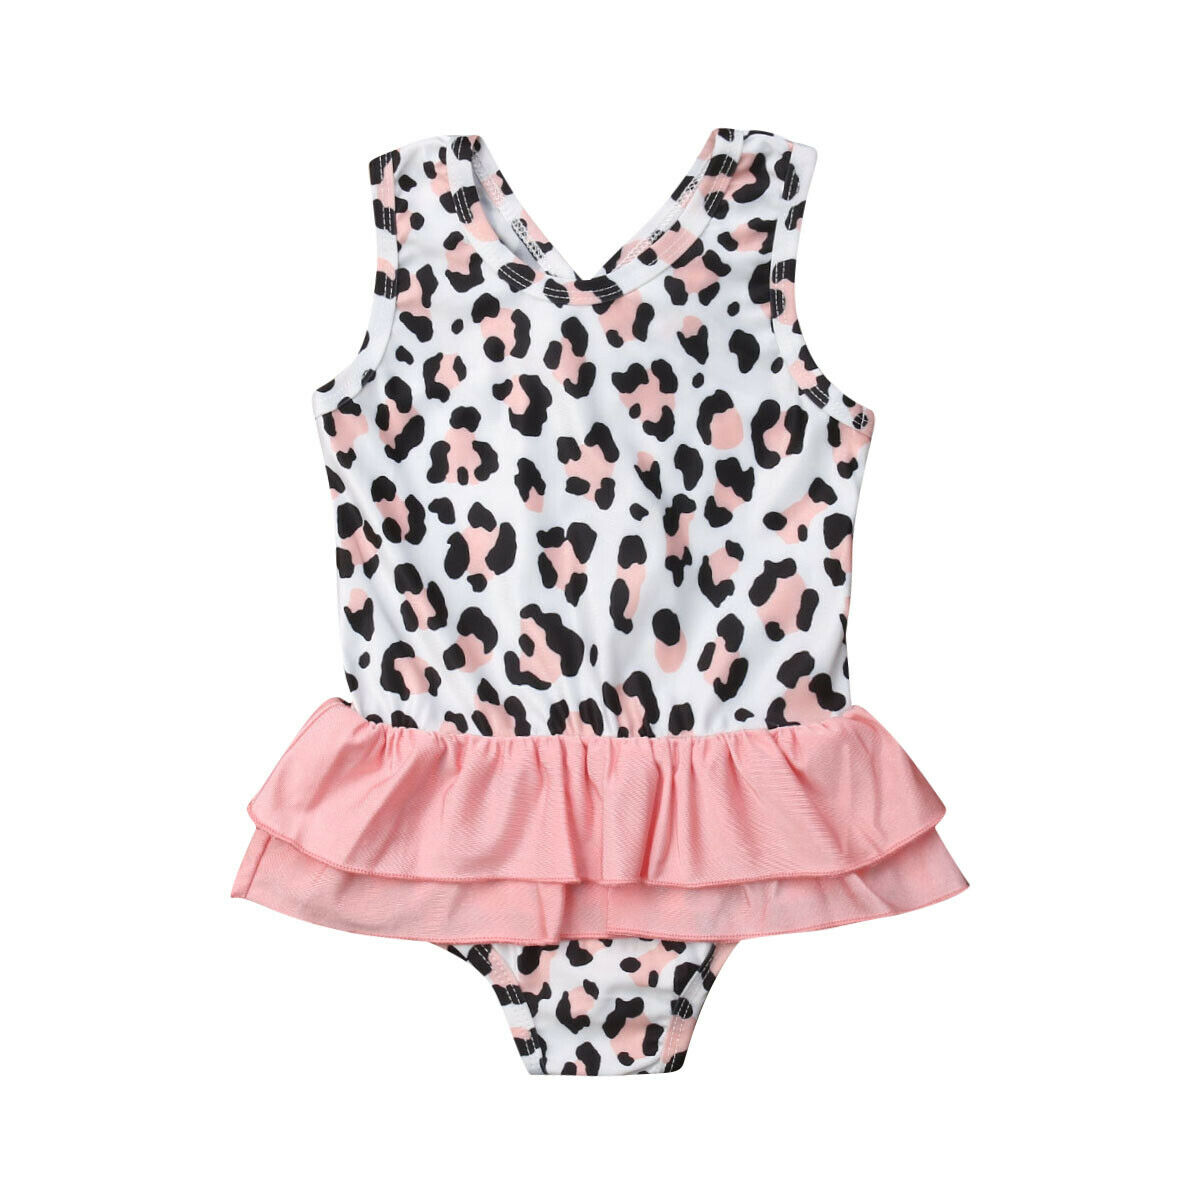 Toddler børn baby pige badedragt leopard print flæse badetøj strandtøj små piger ét stykke badedragter